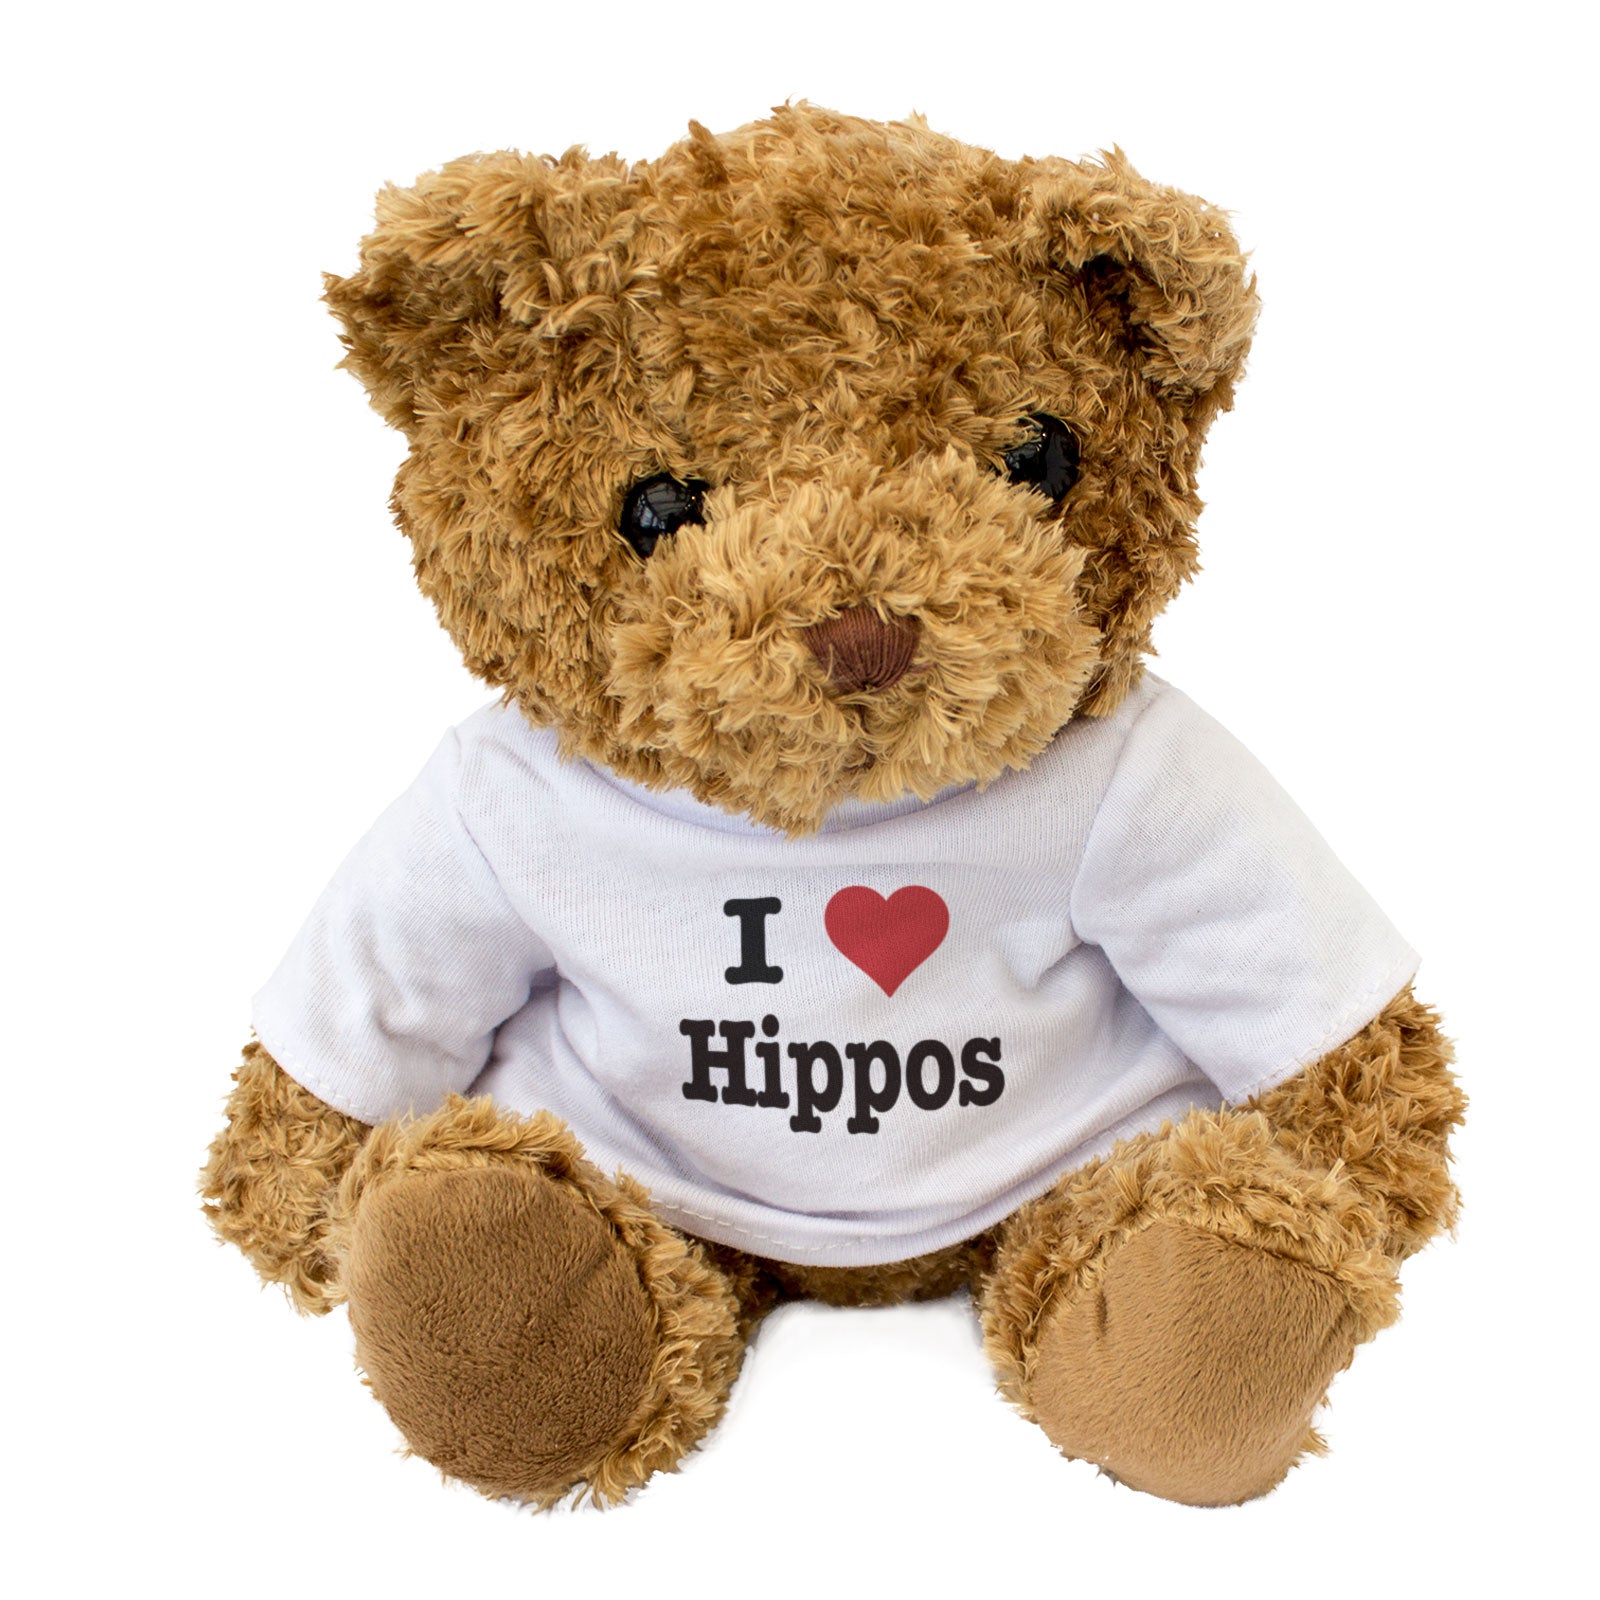 I Love Hippos - Teddy Bear